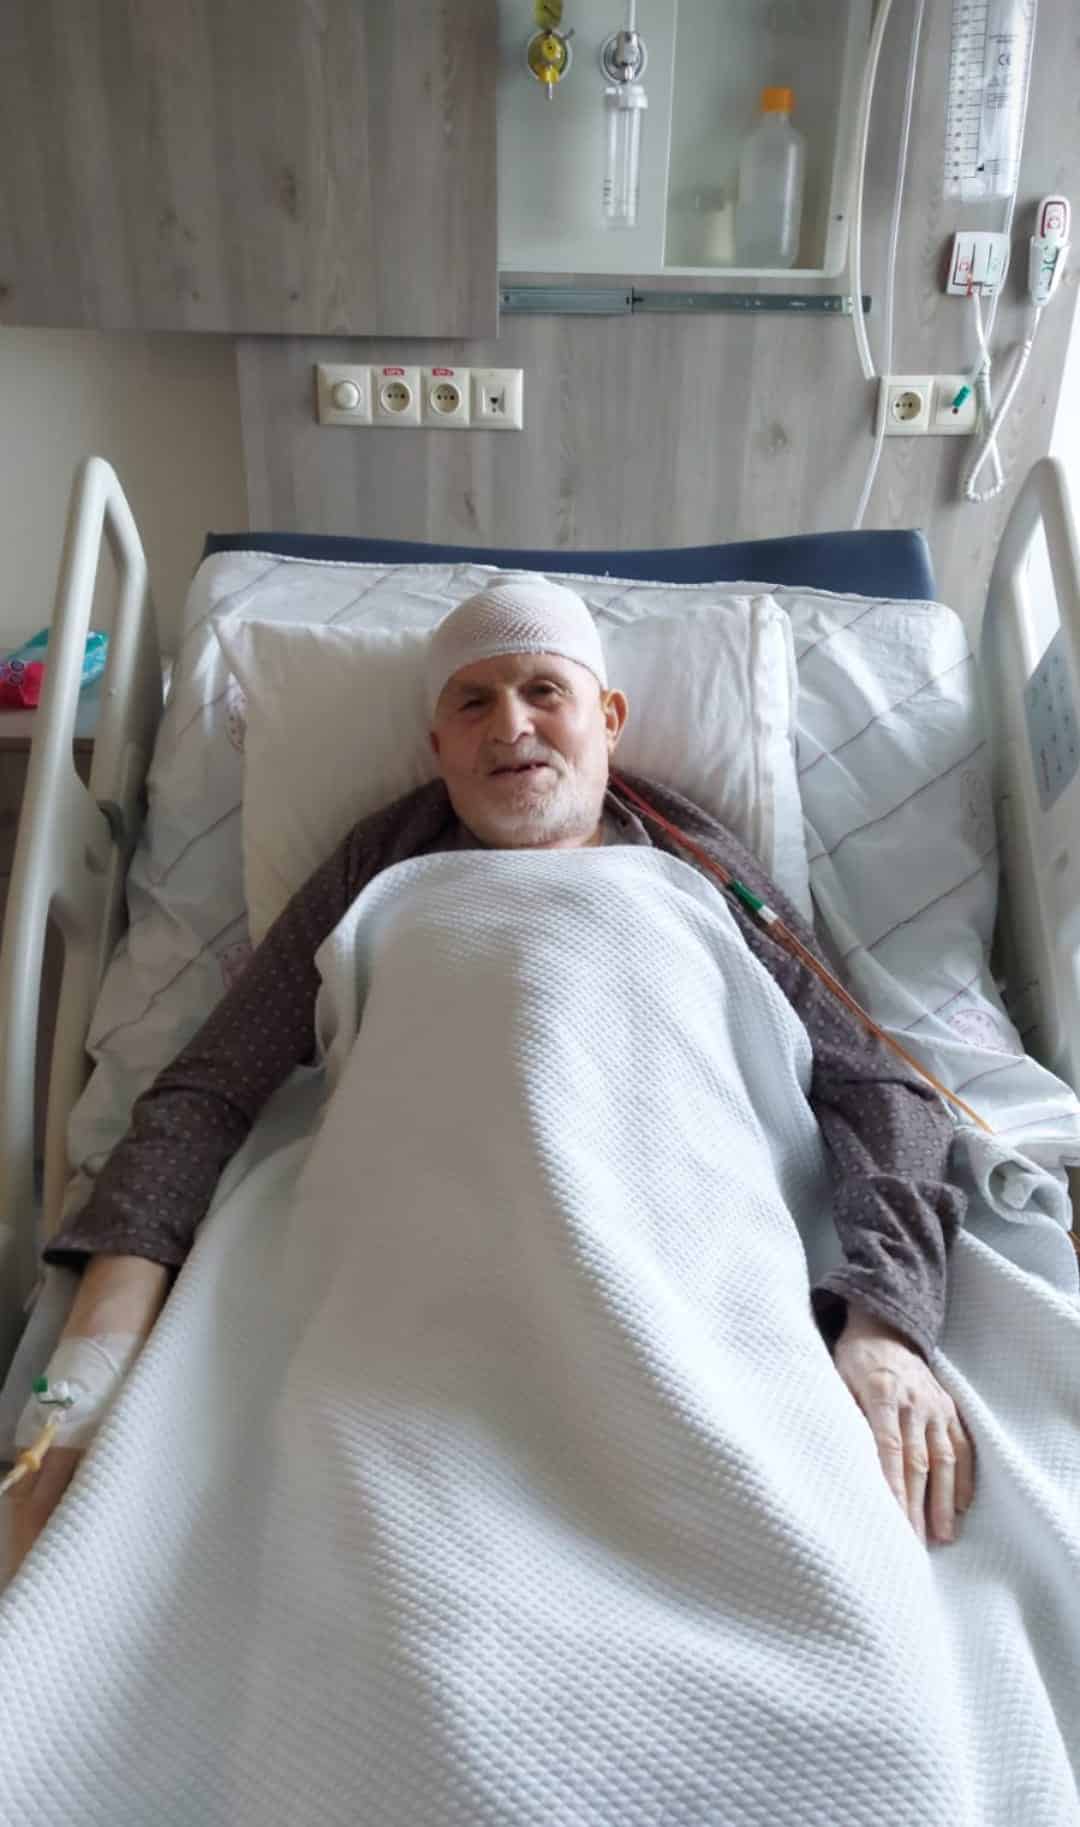 86 Yaşındaki Balcıoğlu Beyin Ameliyatı Geçirdi